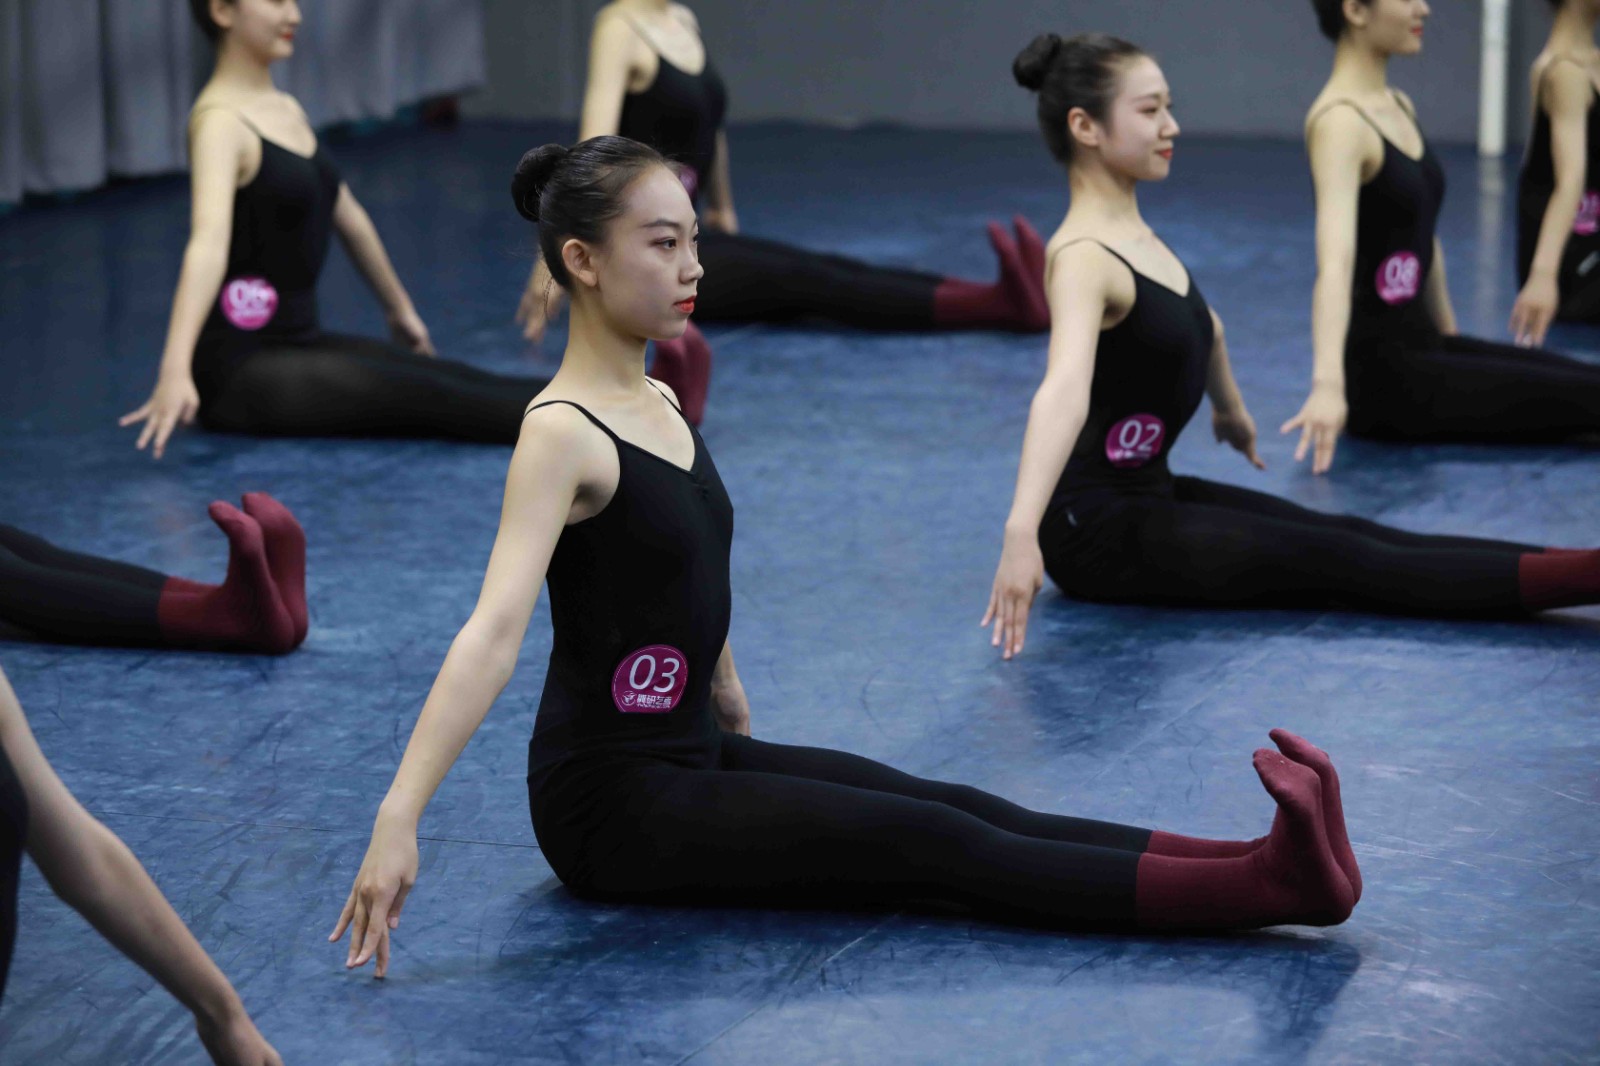 山东滨州艺考舞蹈培训机构那家好 山东滨州艺考舞蹈机构花费大吗 要多少钱?